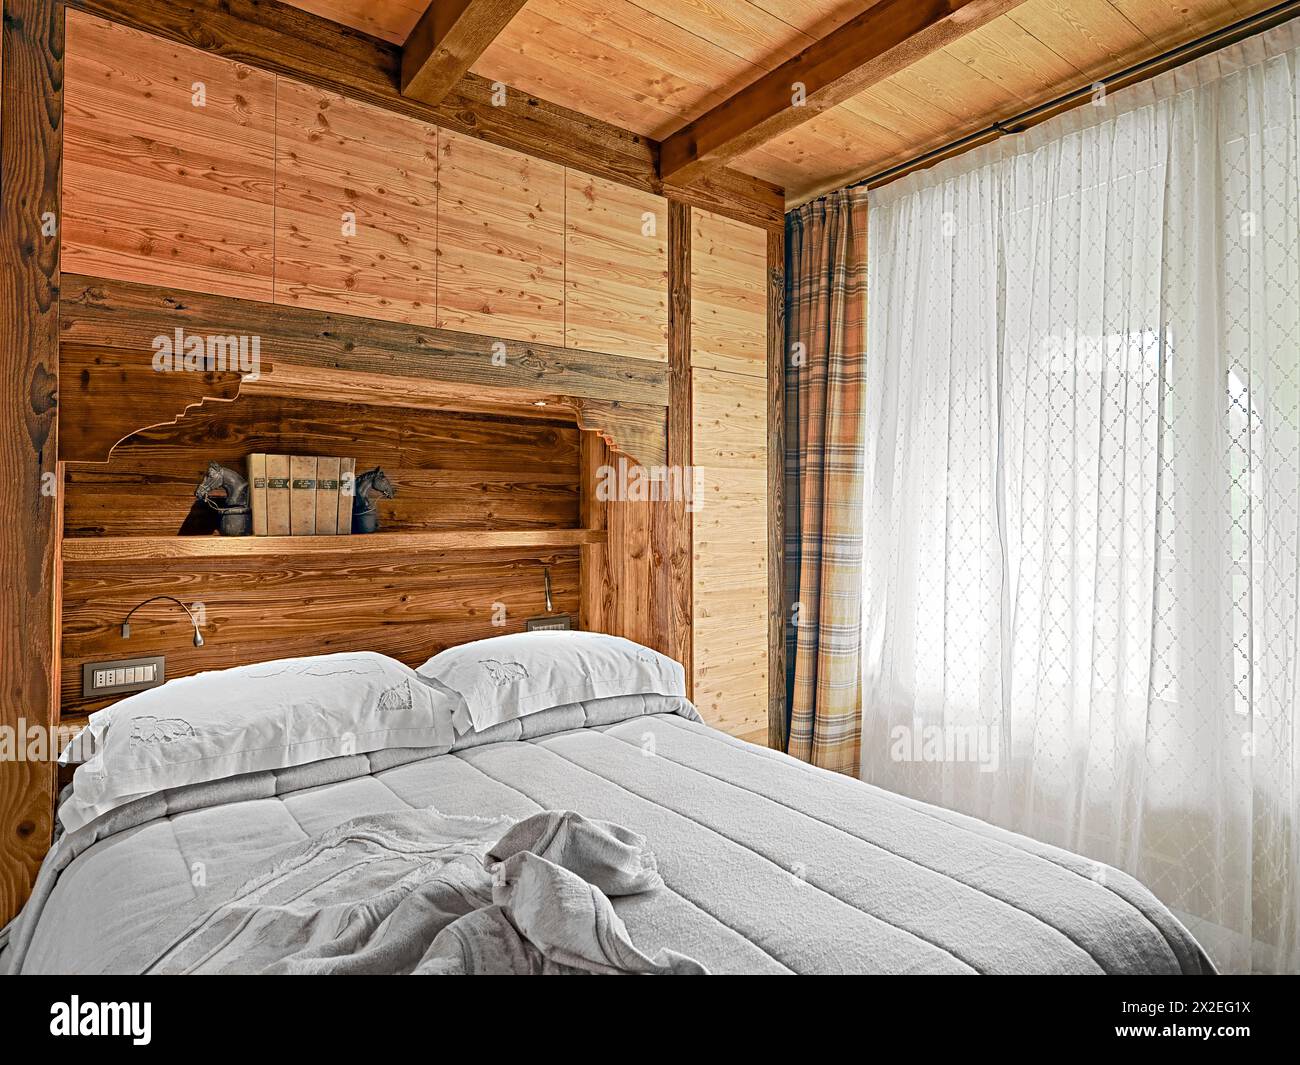 interno rustico della camera da letto con mobili in legno e soffitto in legno sulla destra la grande finestra con tenda Foto Stock